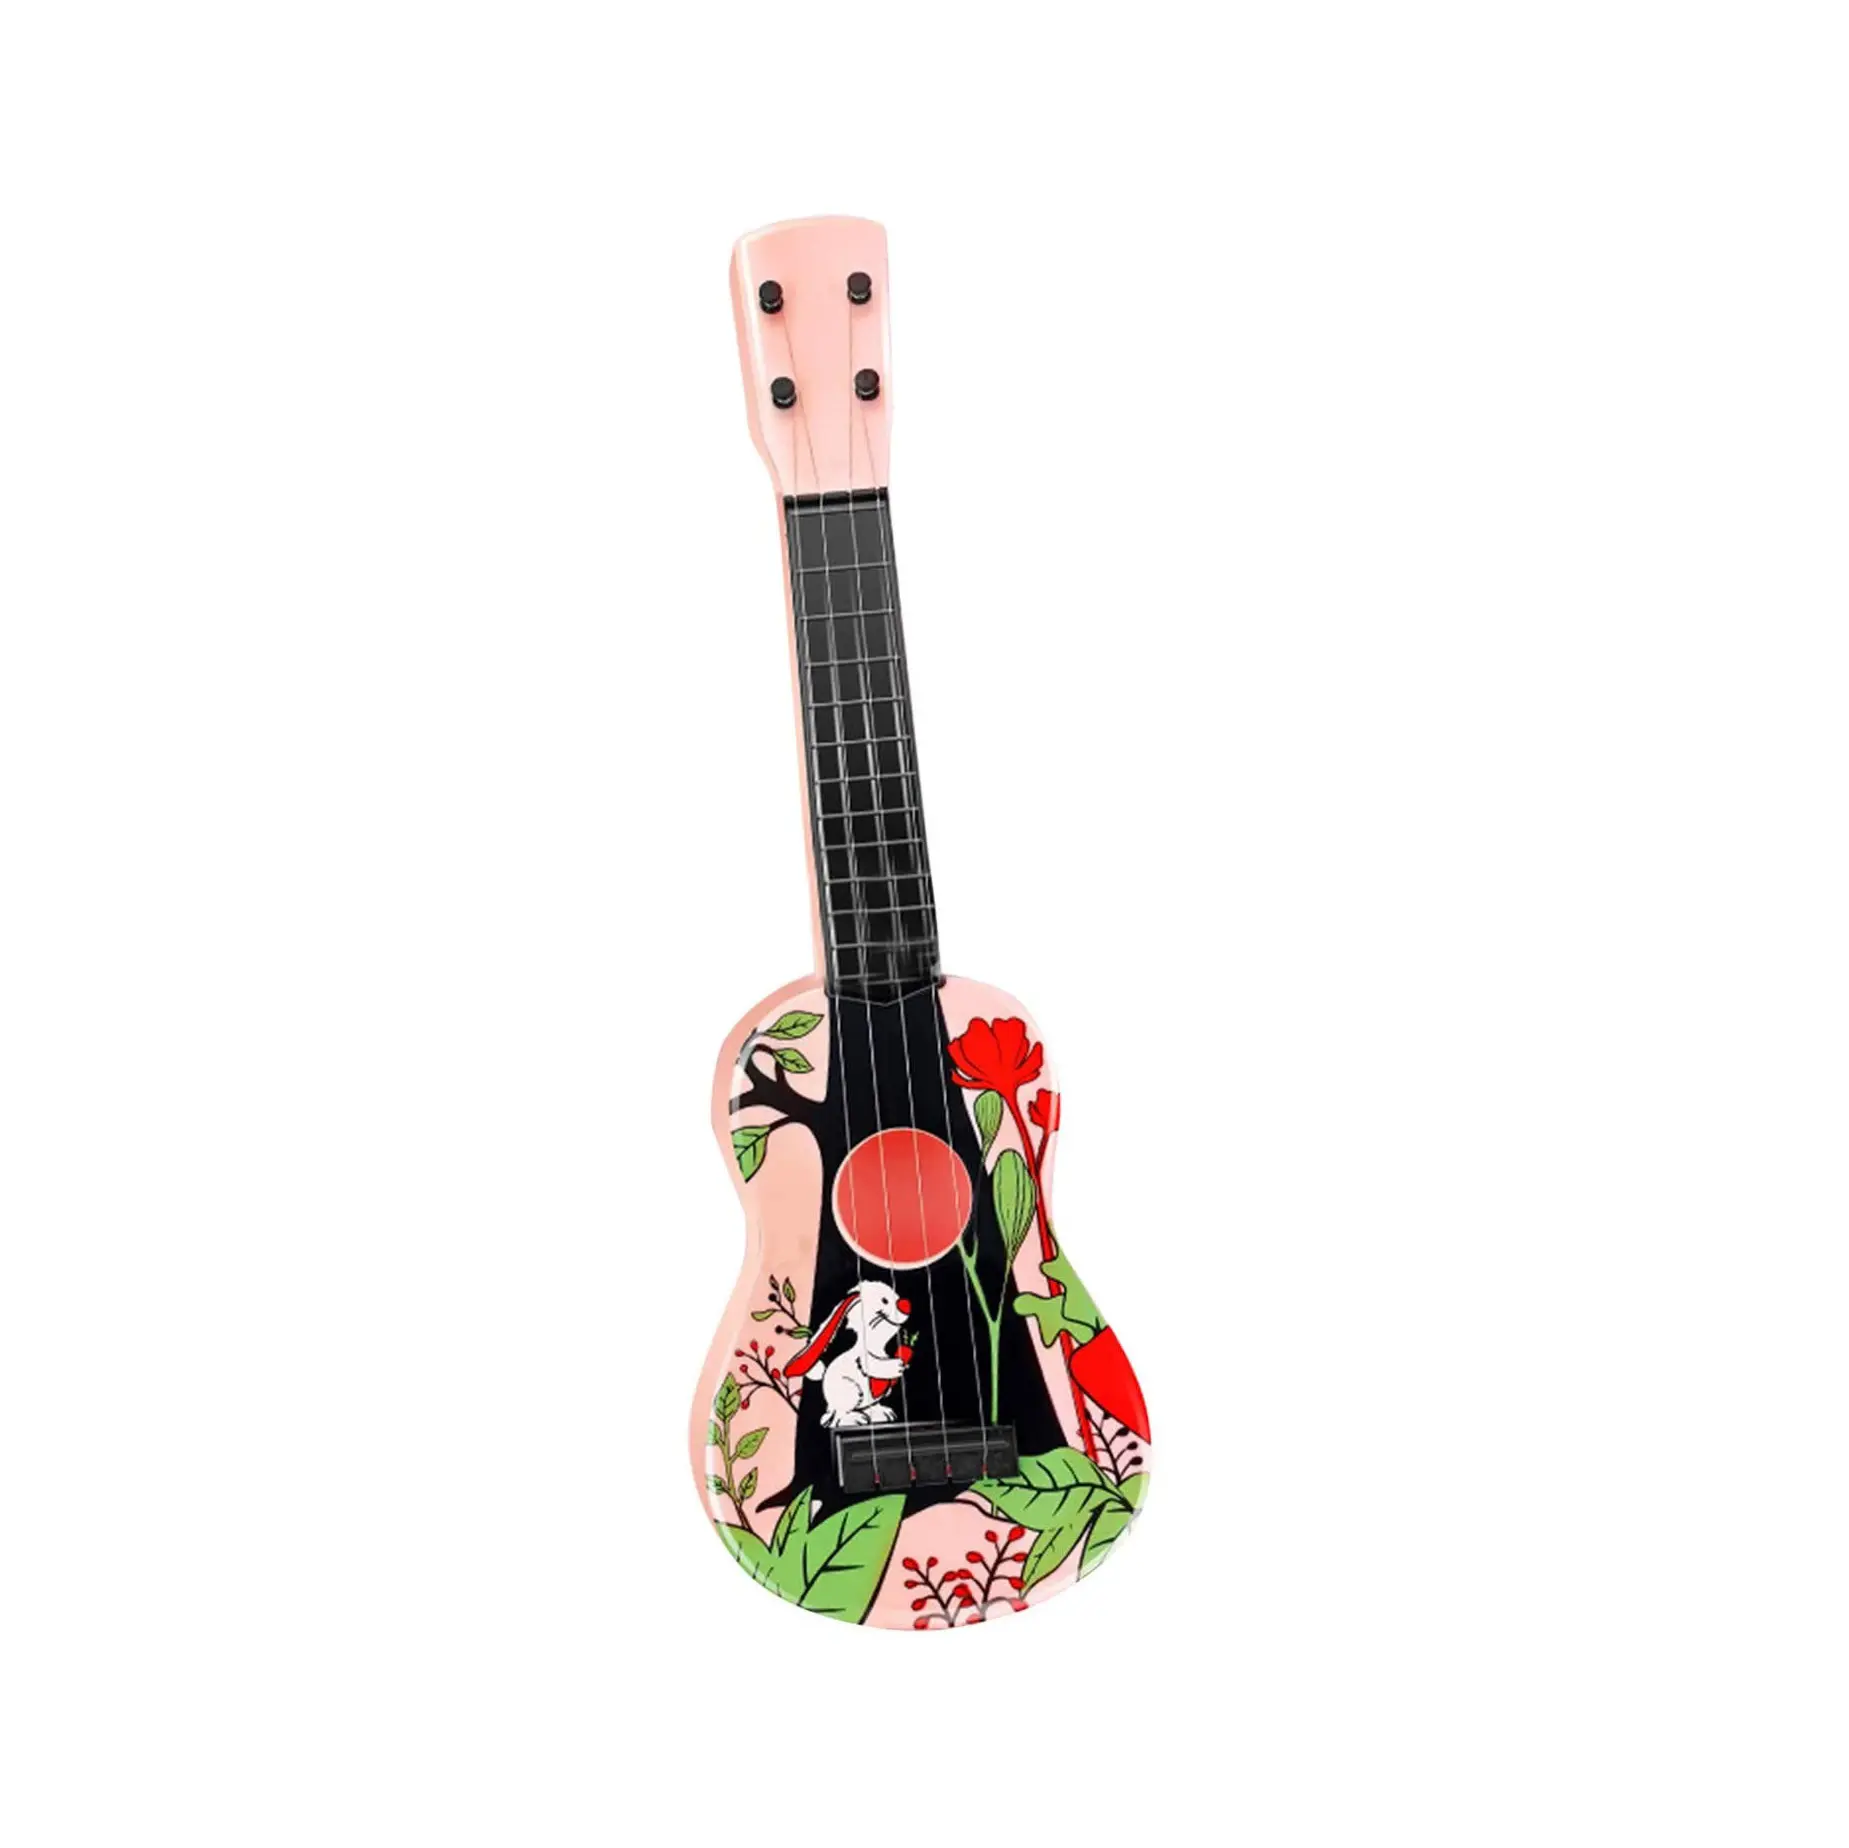 Children's 4 String Ukulele Puzzle Enlightenment Can Play Simulation Ukulele Guitar Toy Classic Ukulele Musical Instrument